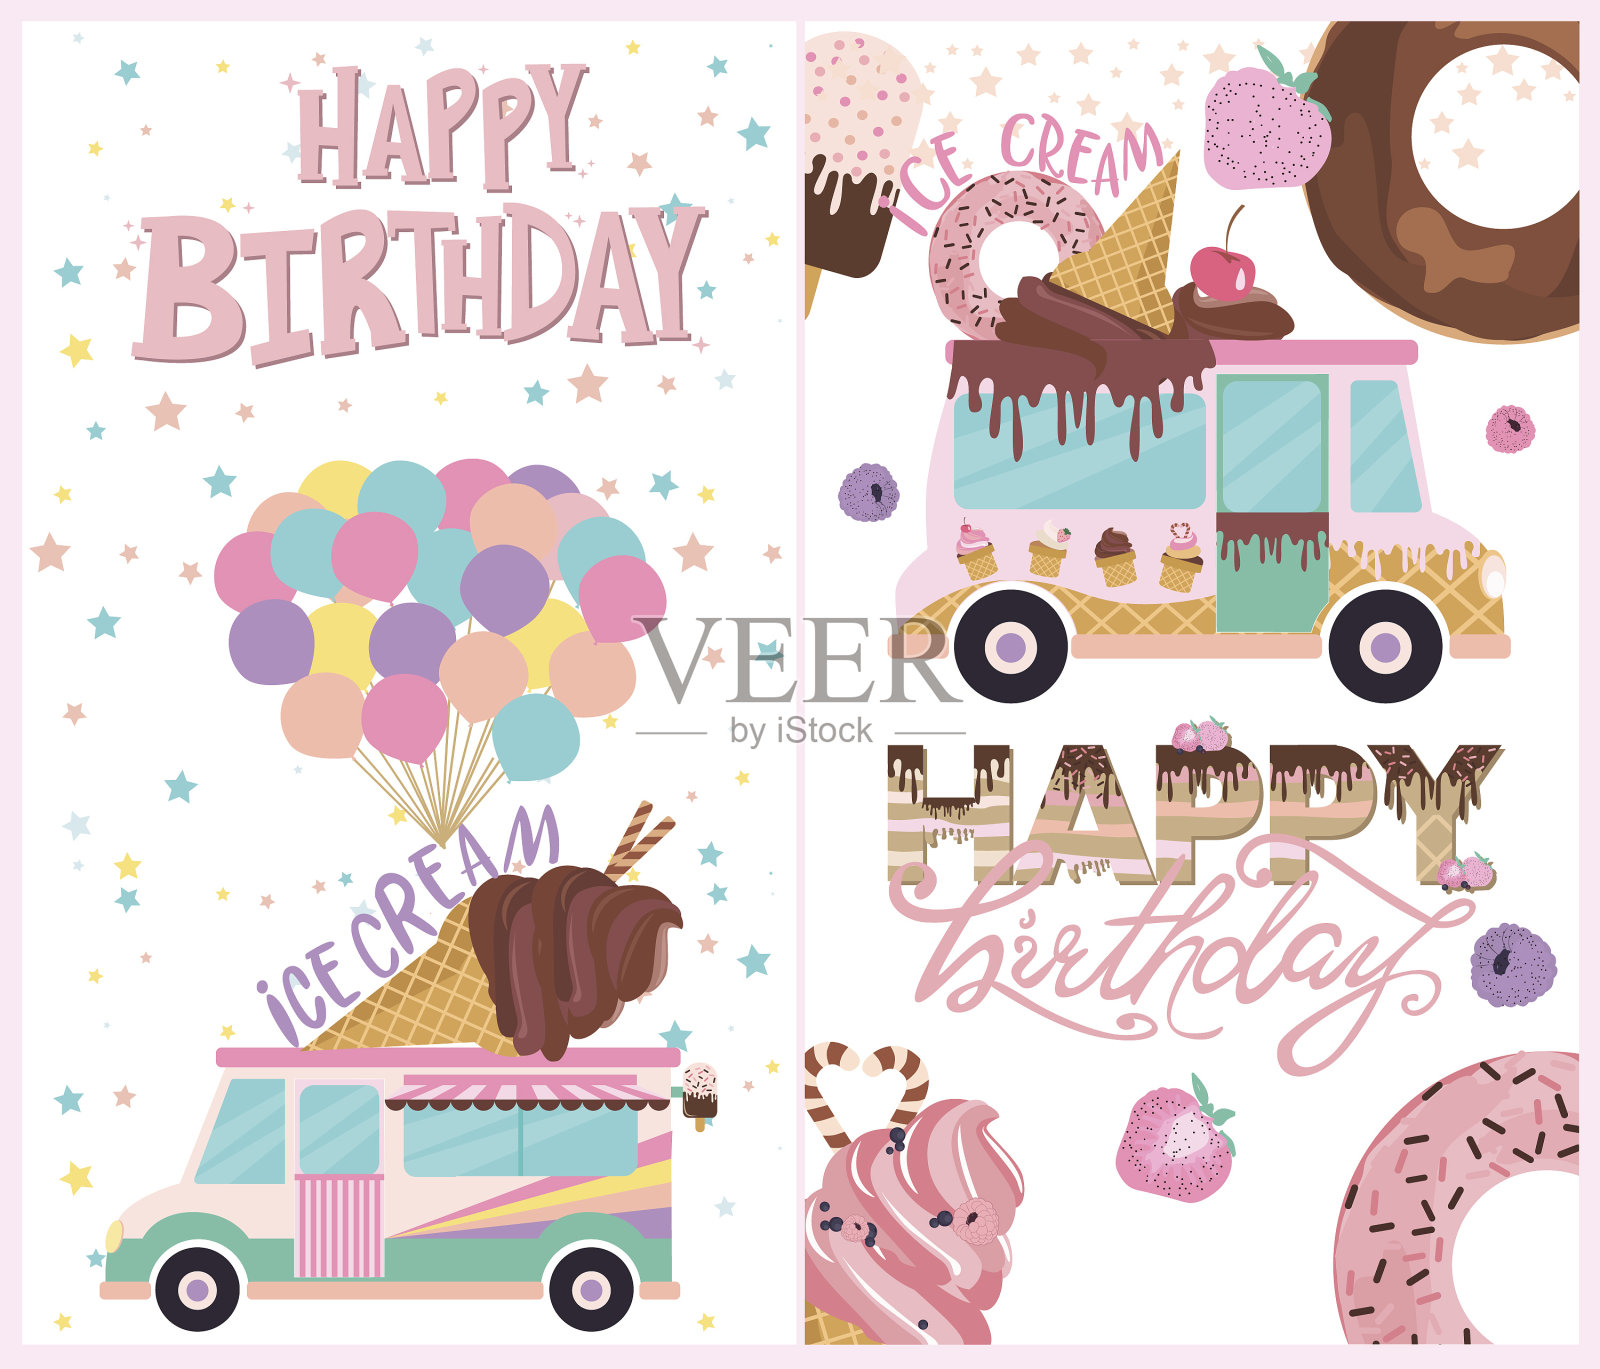 一套有冰淇淋和甜甜圈的生日贺卡插画图片素材